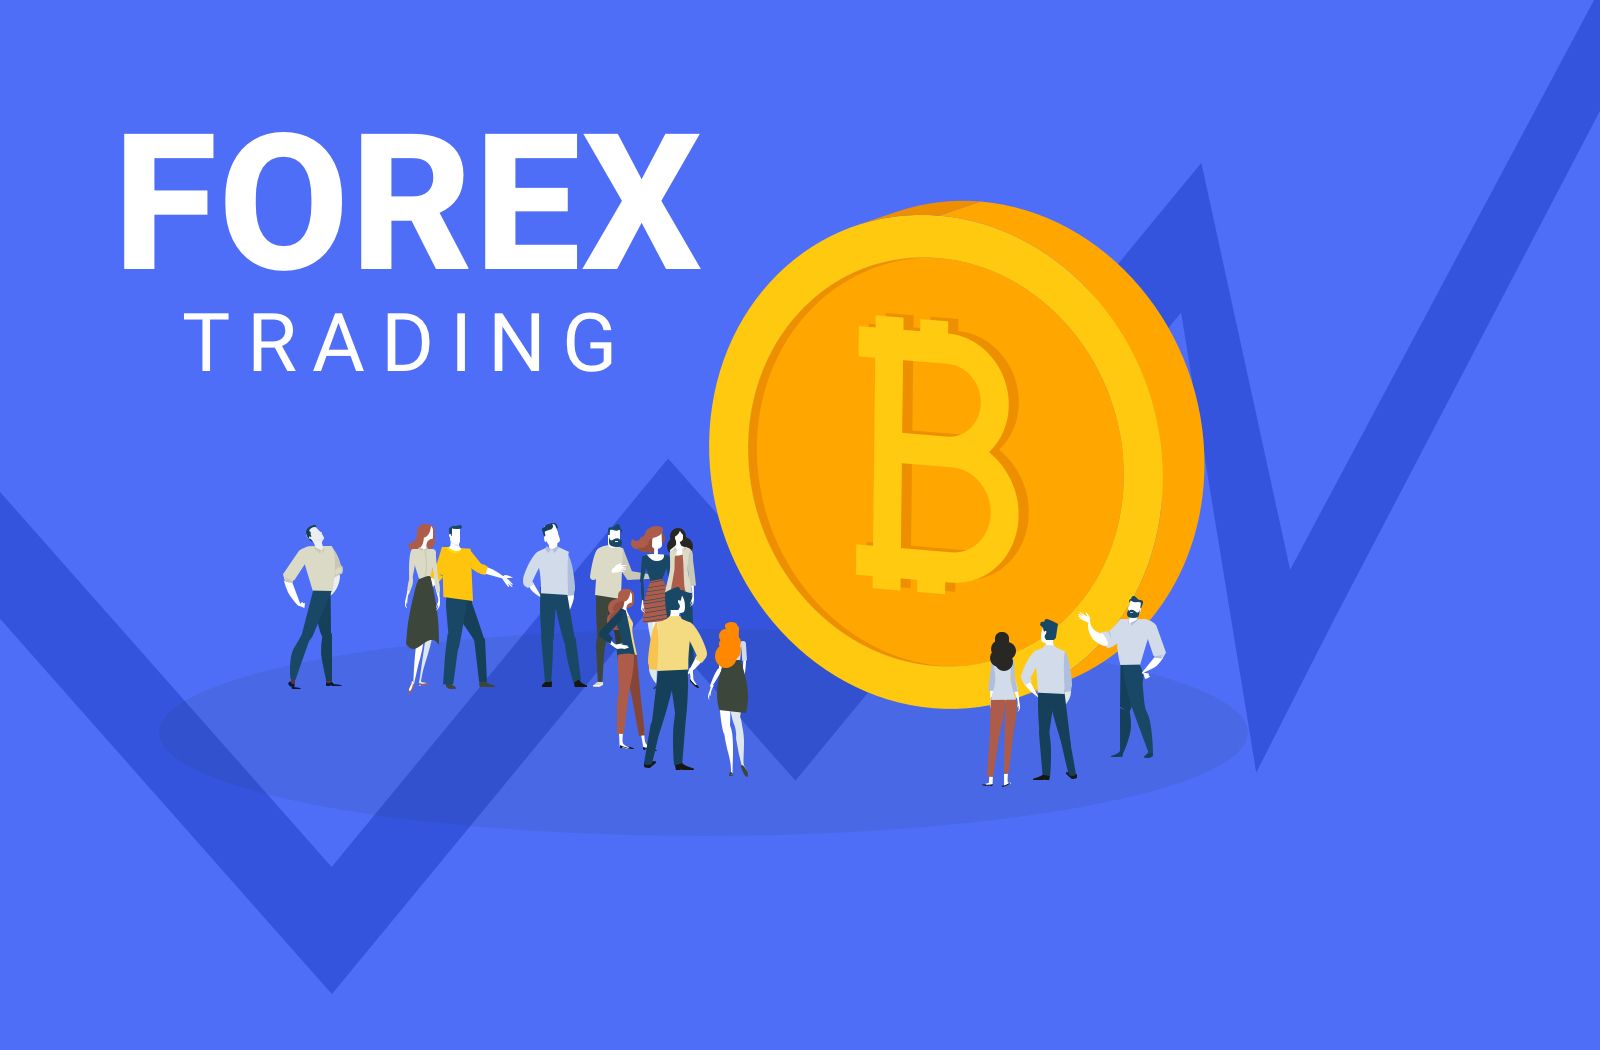 bitcoin trading forex brokers investire ripple vs bitcoin